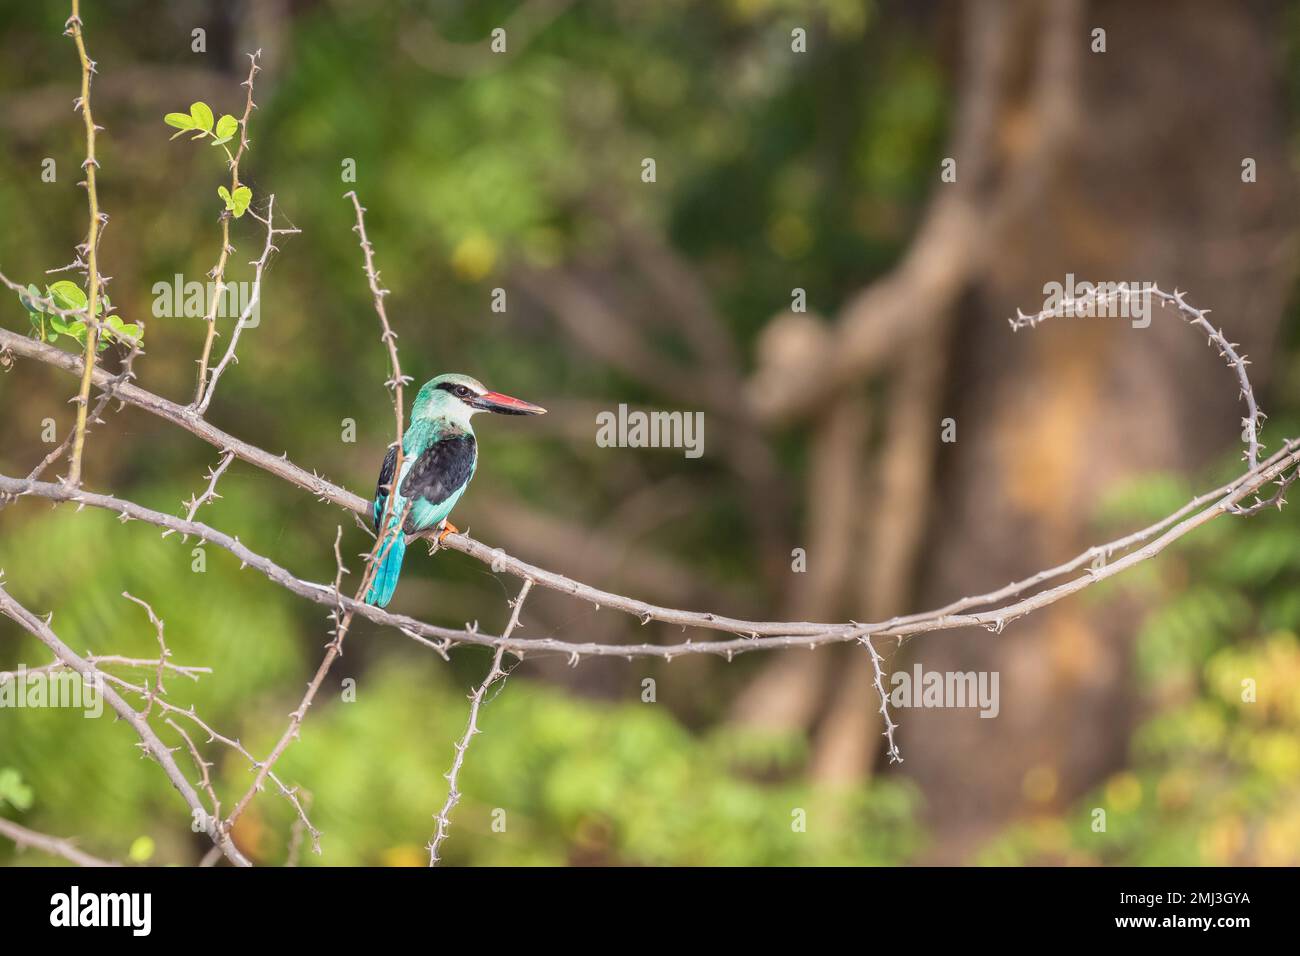 kingfisher croisé (Halcyon malimbica), perché sur la branche, Gambie, Afrique Banque D'Images